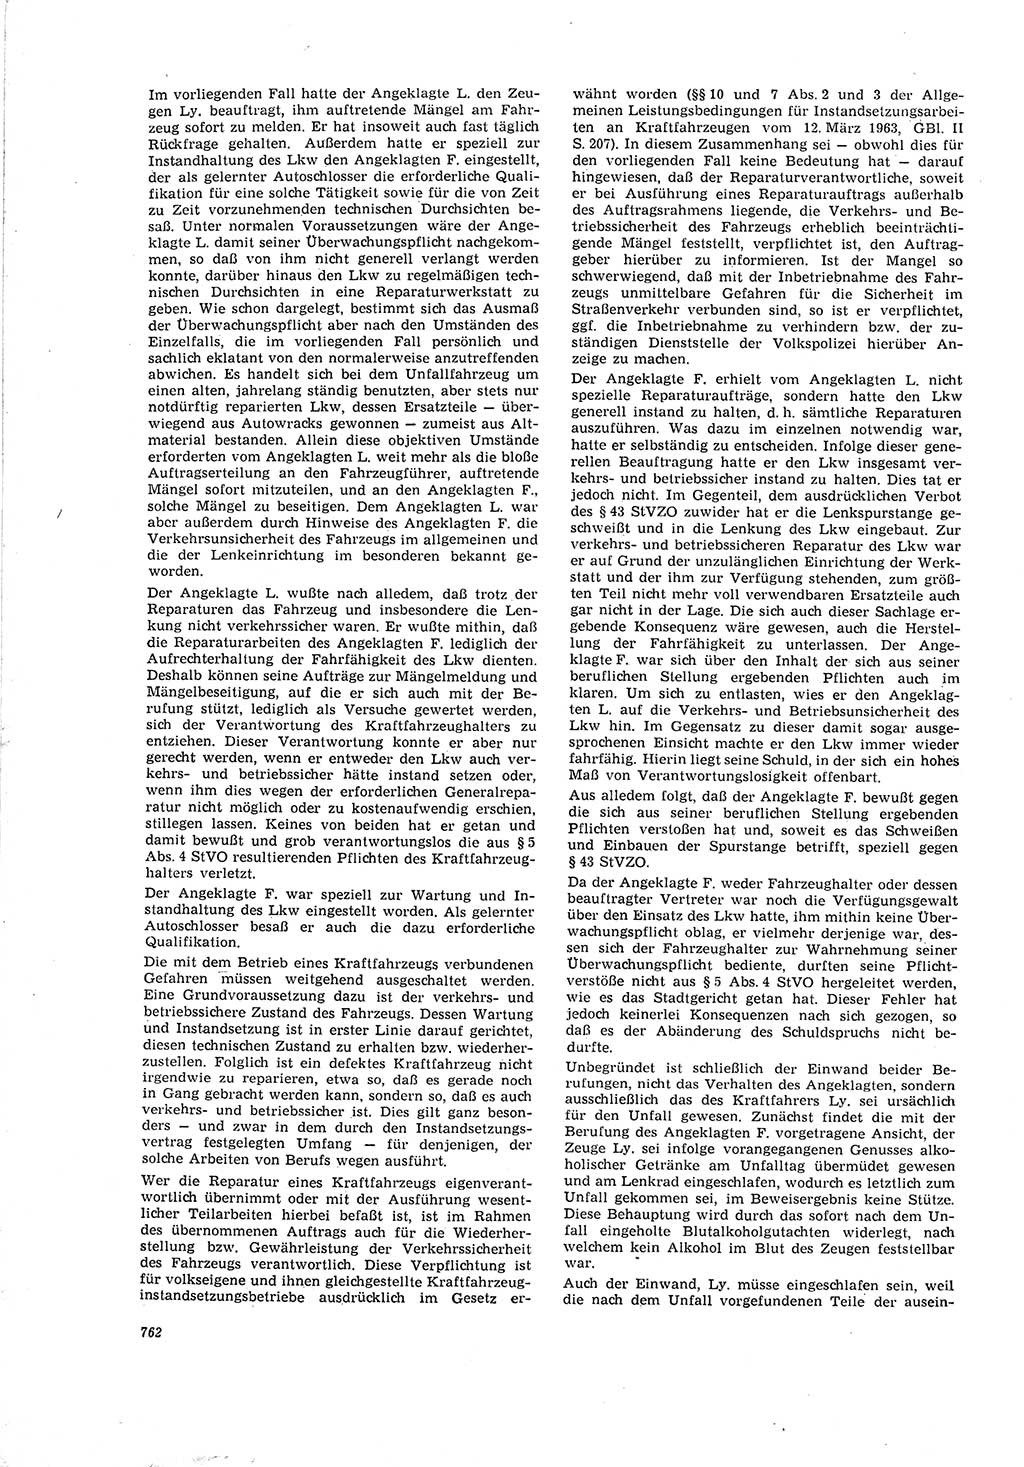 Neue Justiz (NJ), Zeitschrift für Recht und Rechtswissenschaft [Deutsche Demokratische Republik (DDR)], 20. Jahrgang 1966, Seite 762 (NJ DDR 1966, S. 762)